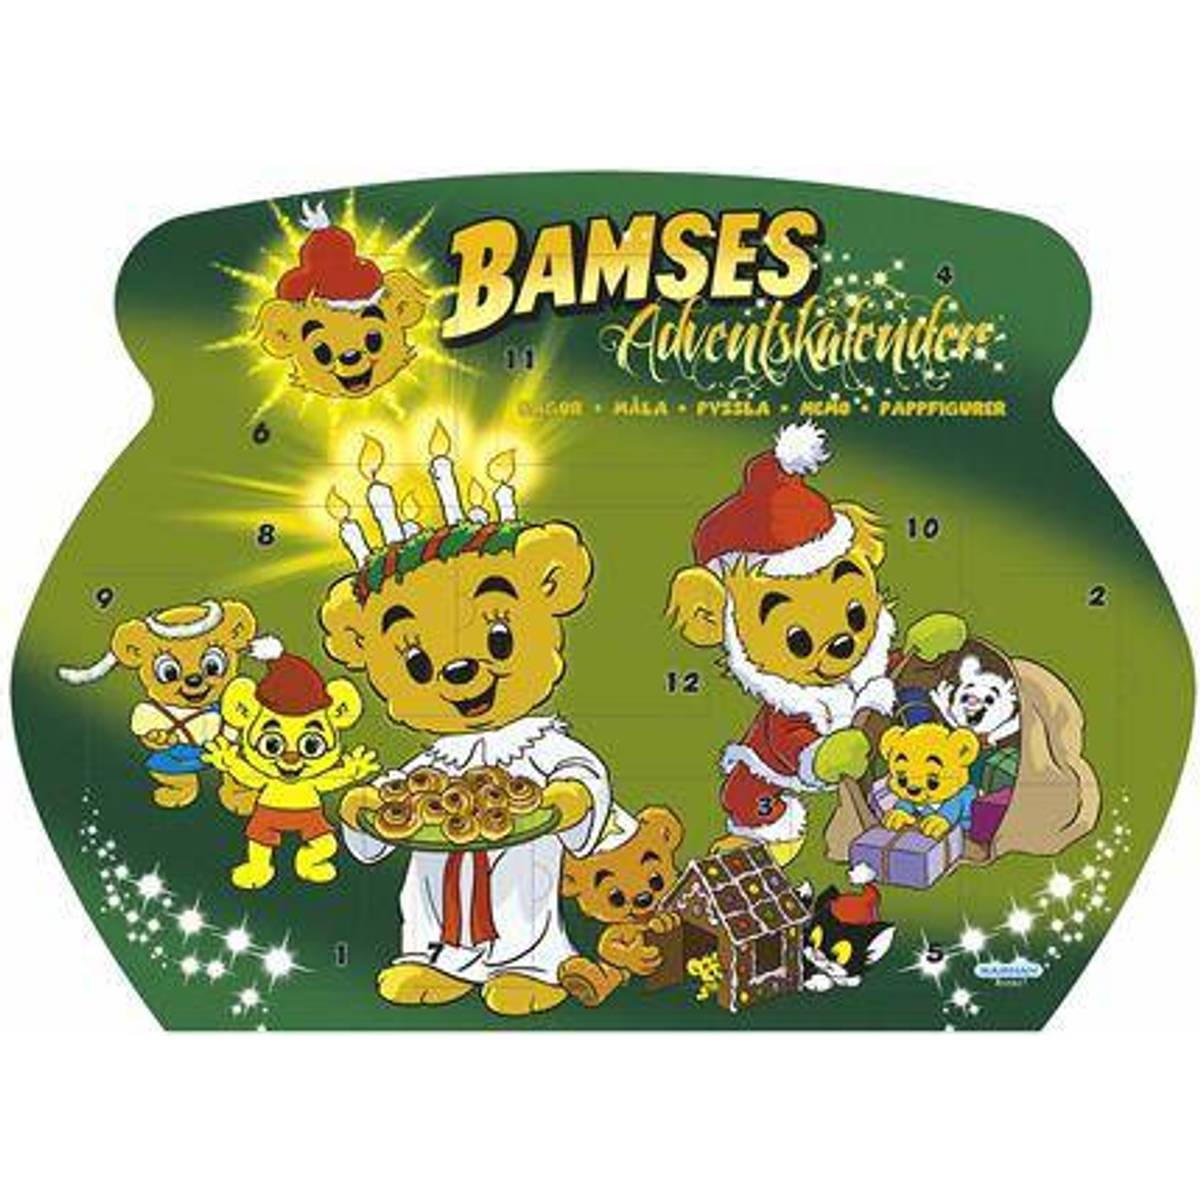 Bamse - Adventskalender (3 produkter) hos PriceRunner • Se lägsta ...